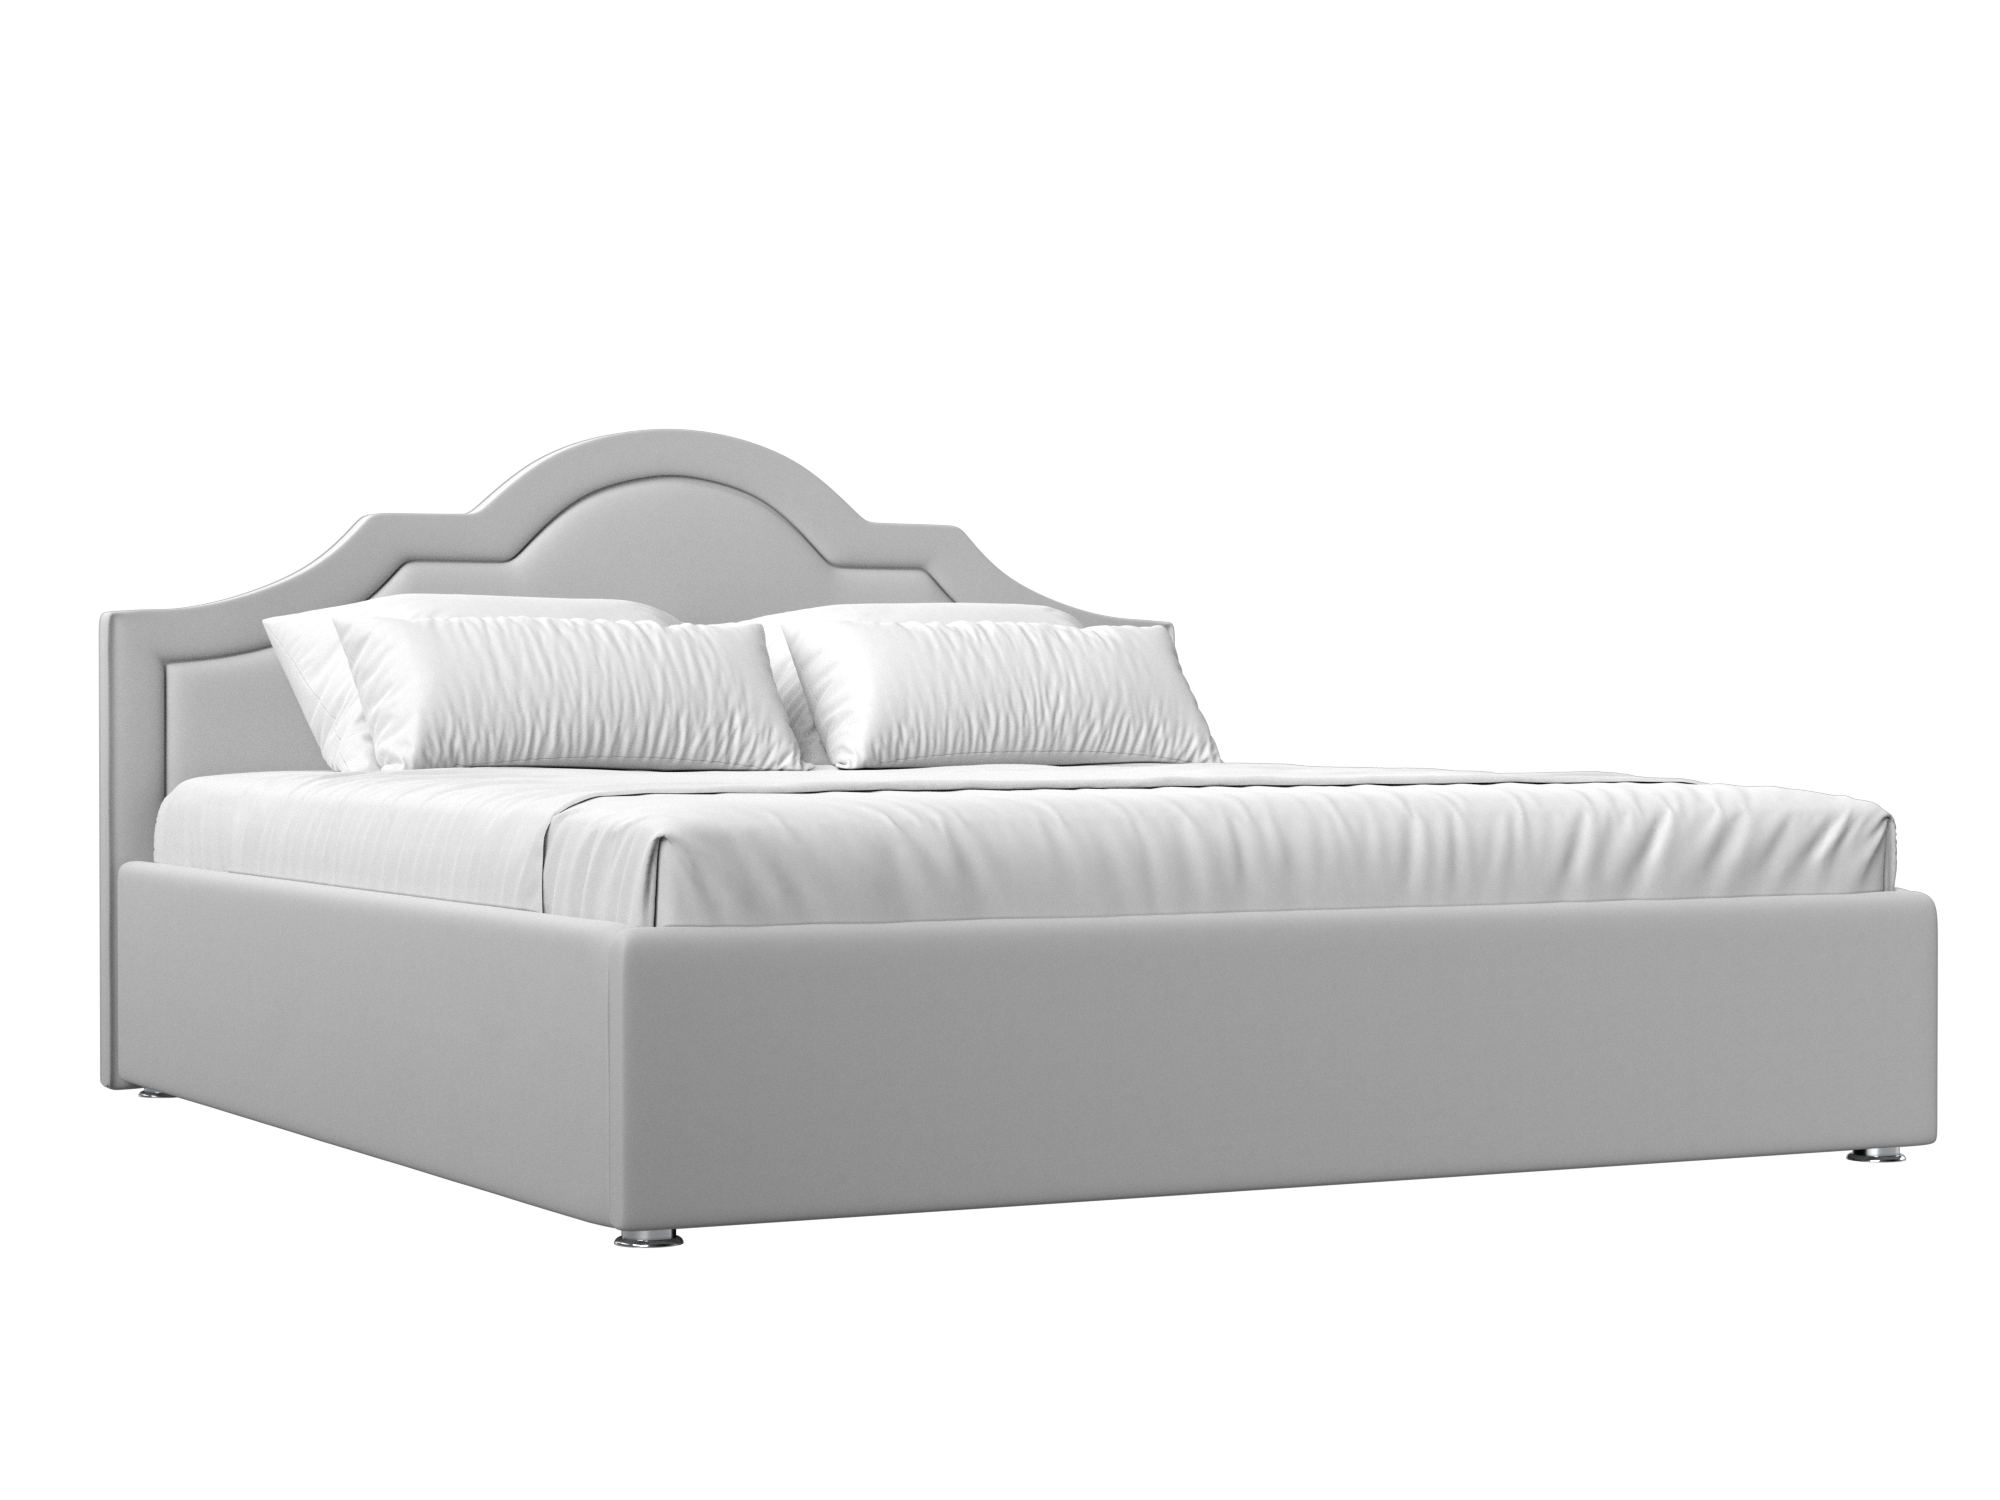 Интерьерная кровать Афина 180 (Белый)